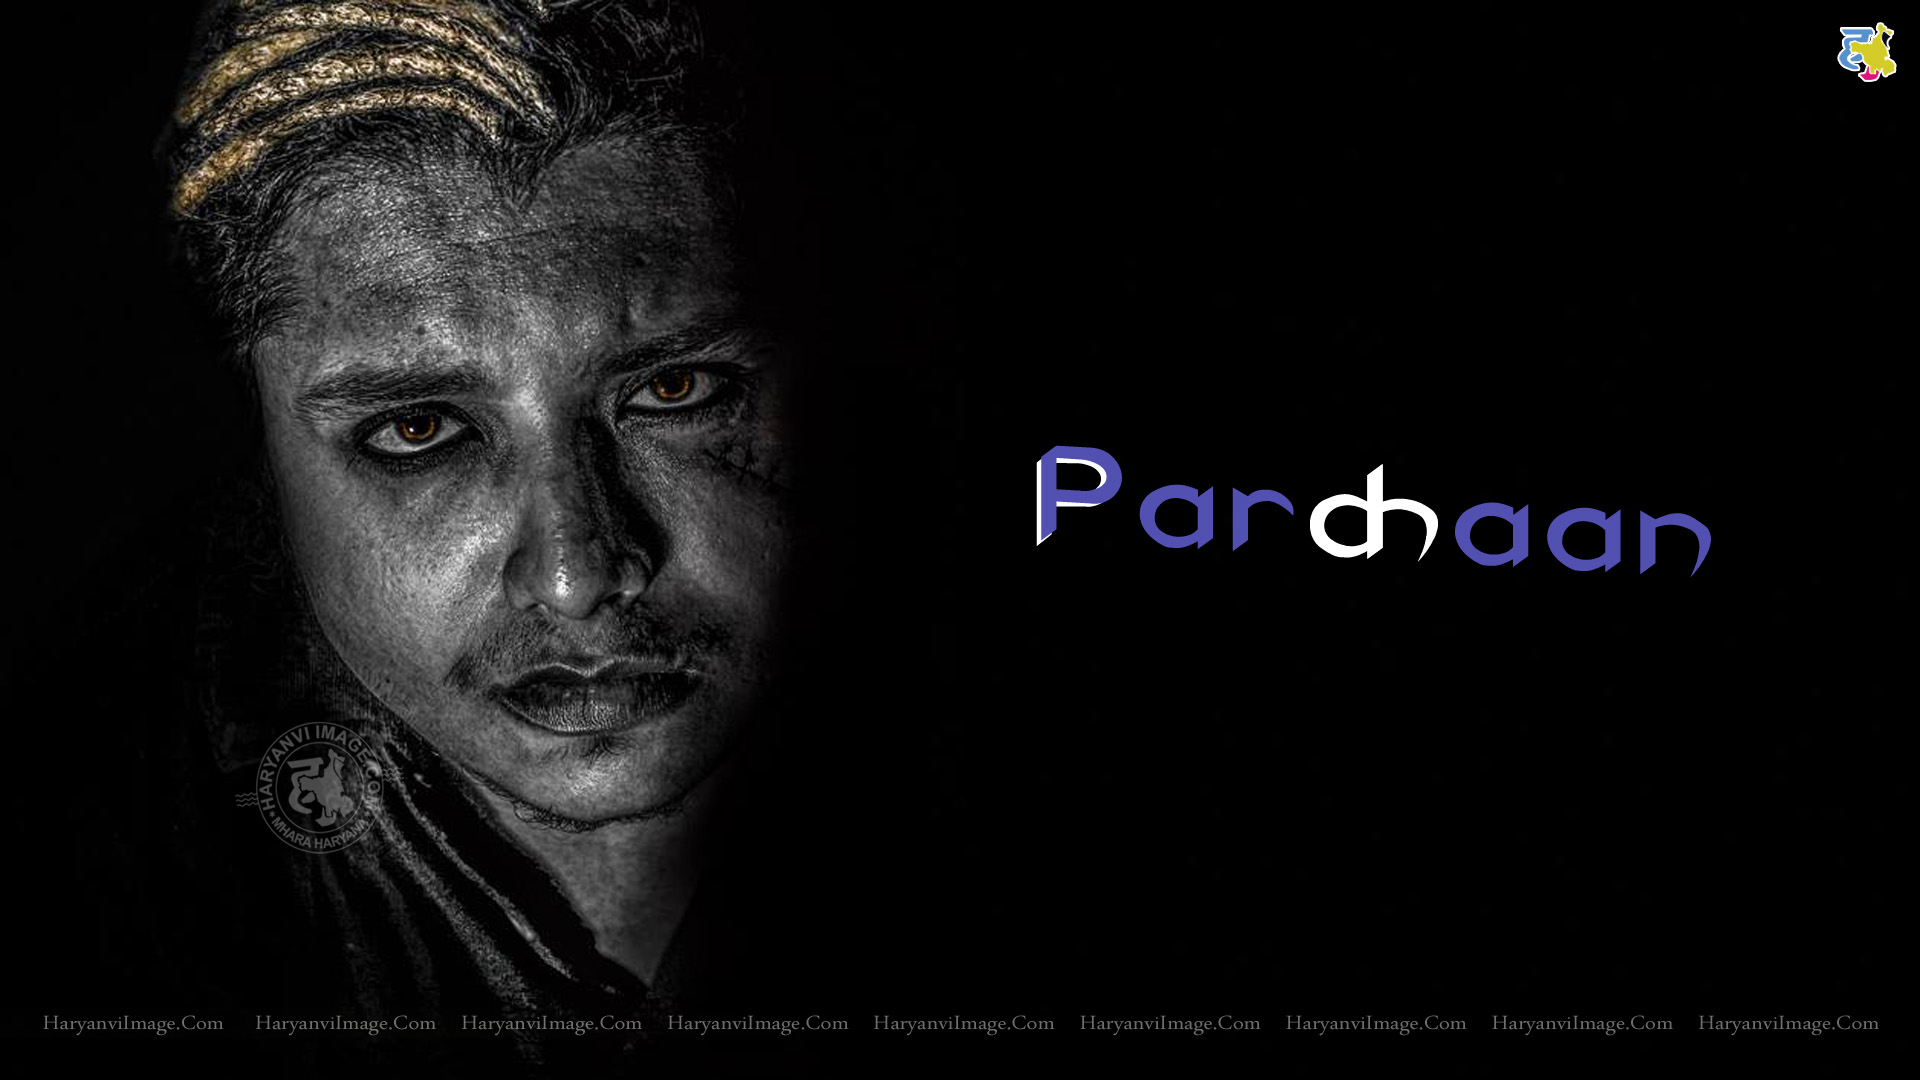 Pardhaan